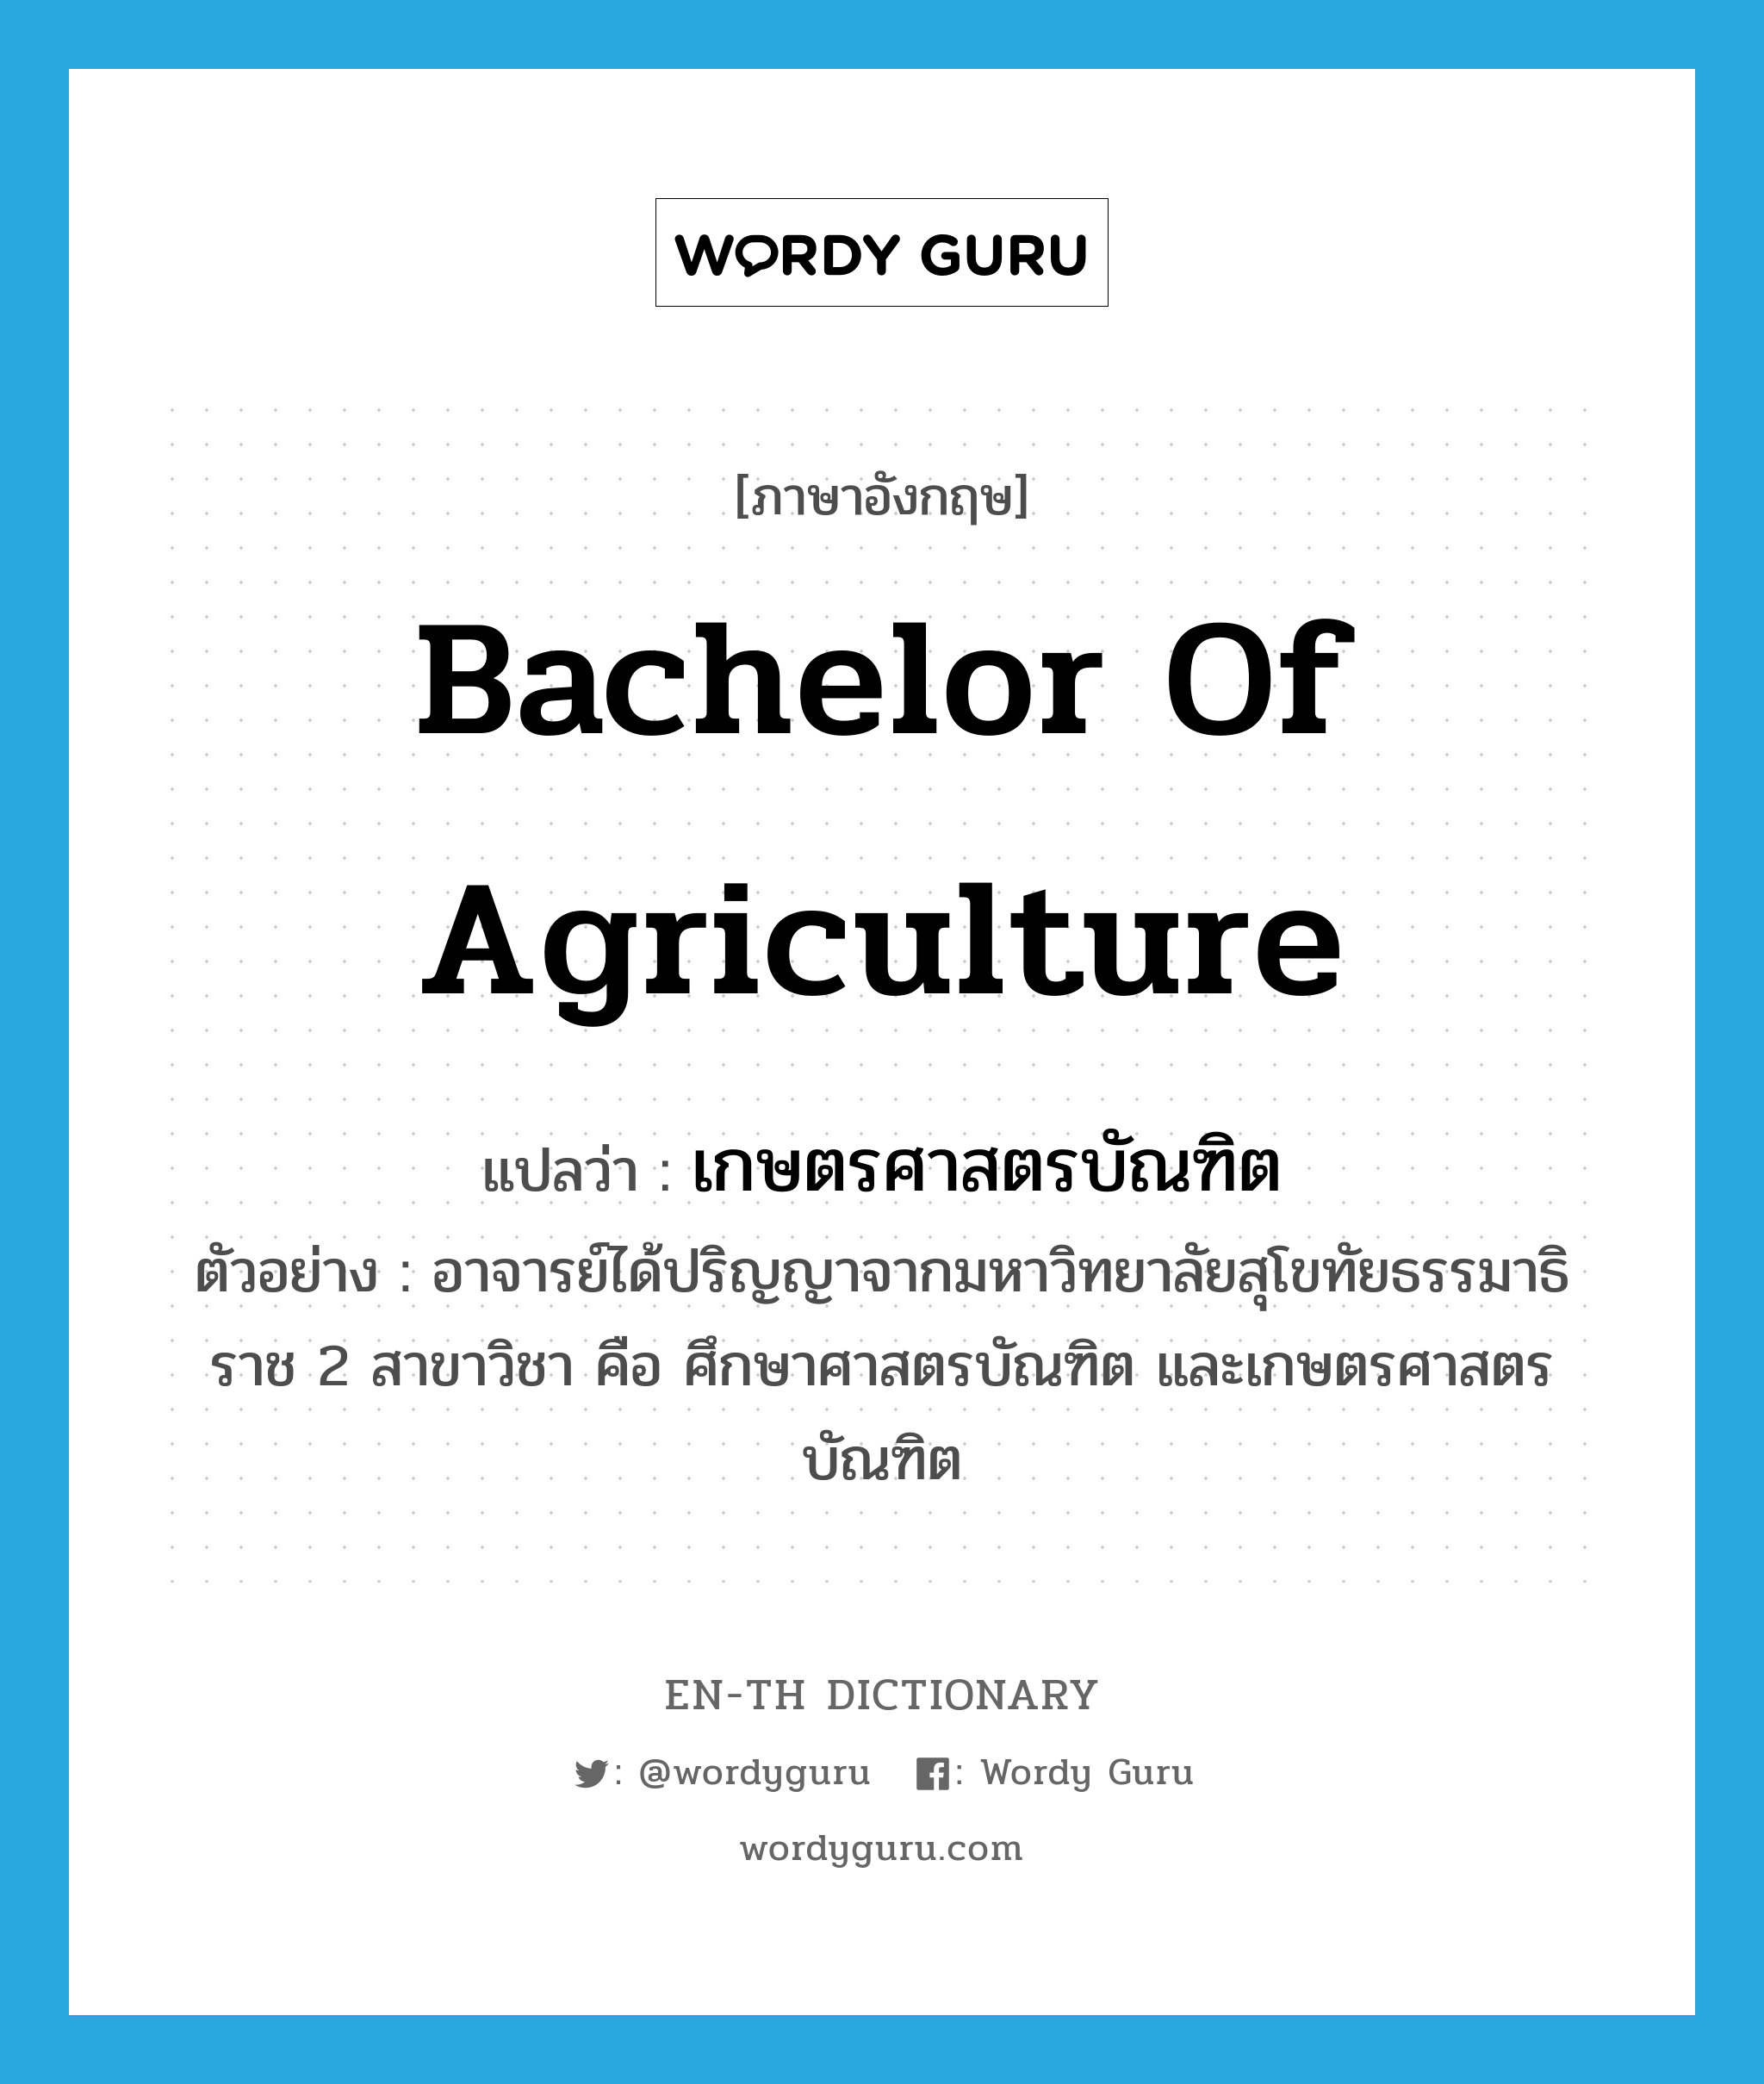 เกษตรศาสตรบัณฑิต ภาษาอังกฤษ?, คำศัพท์ภาษาอังกฤษ เกษตรศาสตรบัณฑิต แปลว่า Bachelor of Agriculture ประเภท N ตัวอย่าง อาจารย์ได้ปริญญาจากมหาวิทยาลัยสุโขทัยธรรมาธิราช 2 สาขาวิชา คือ ศึกษาศาสตรบัณฑิต และเกษตรศาสตรบัณฑิต หมวด N